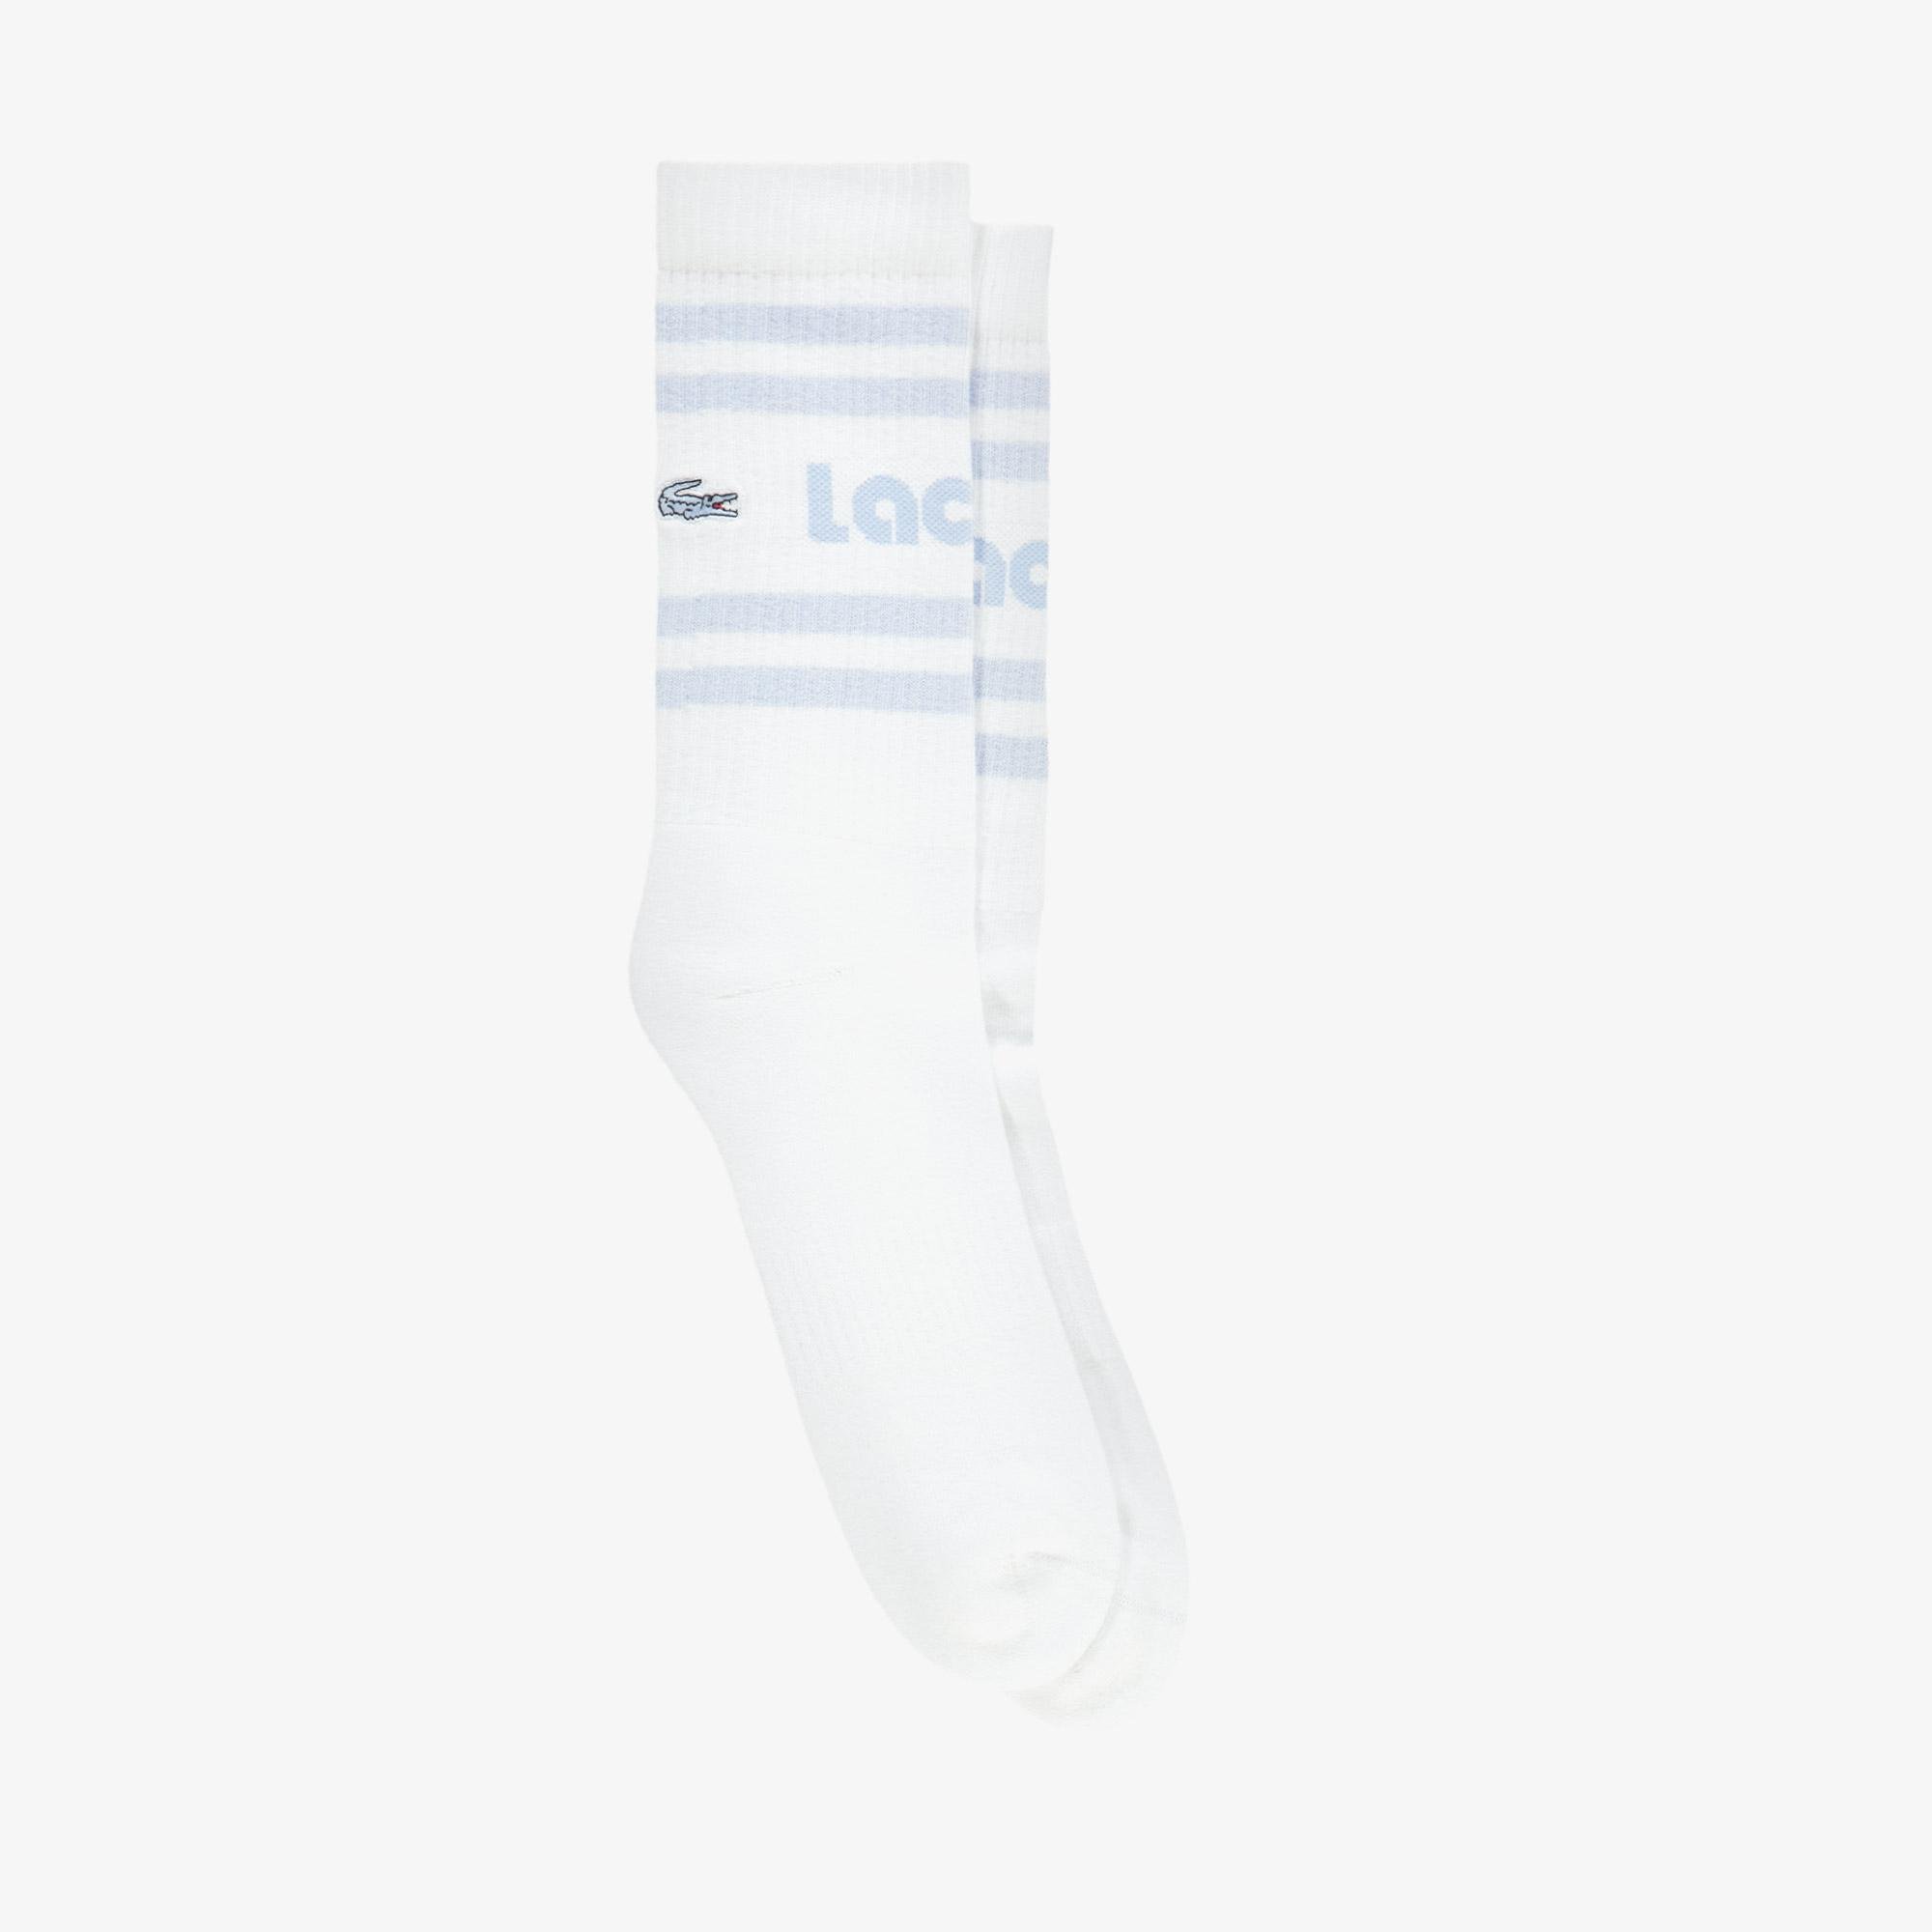 Lacoste Unisex Baskılı Beyaz Çorap